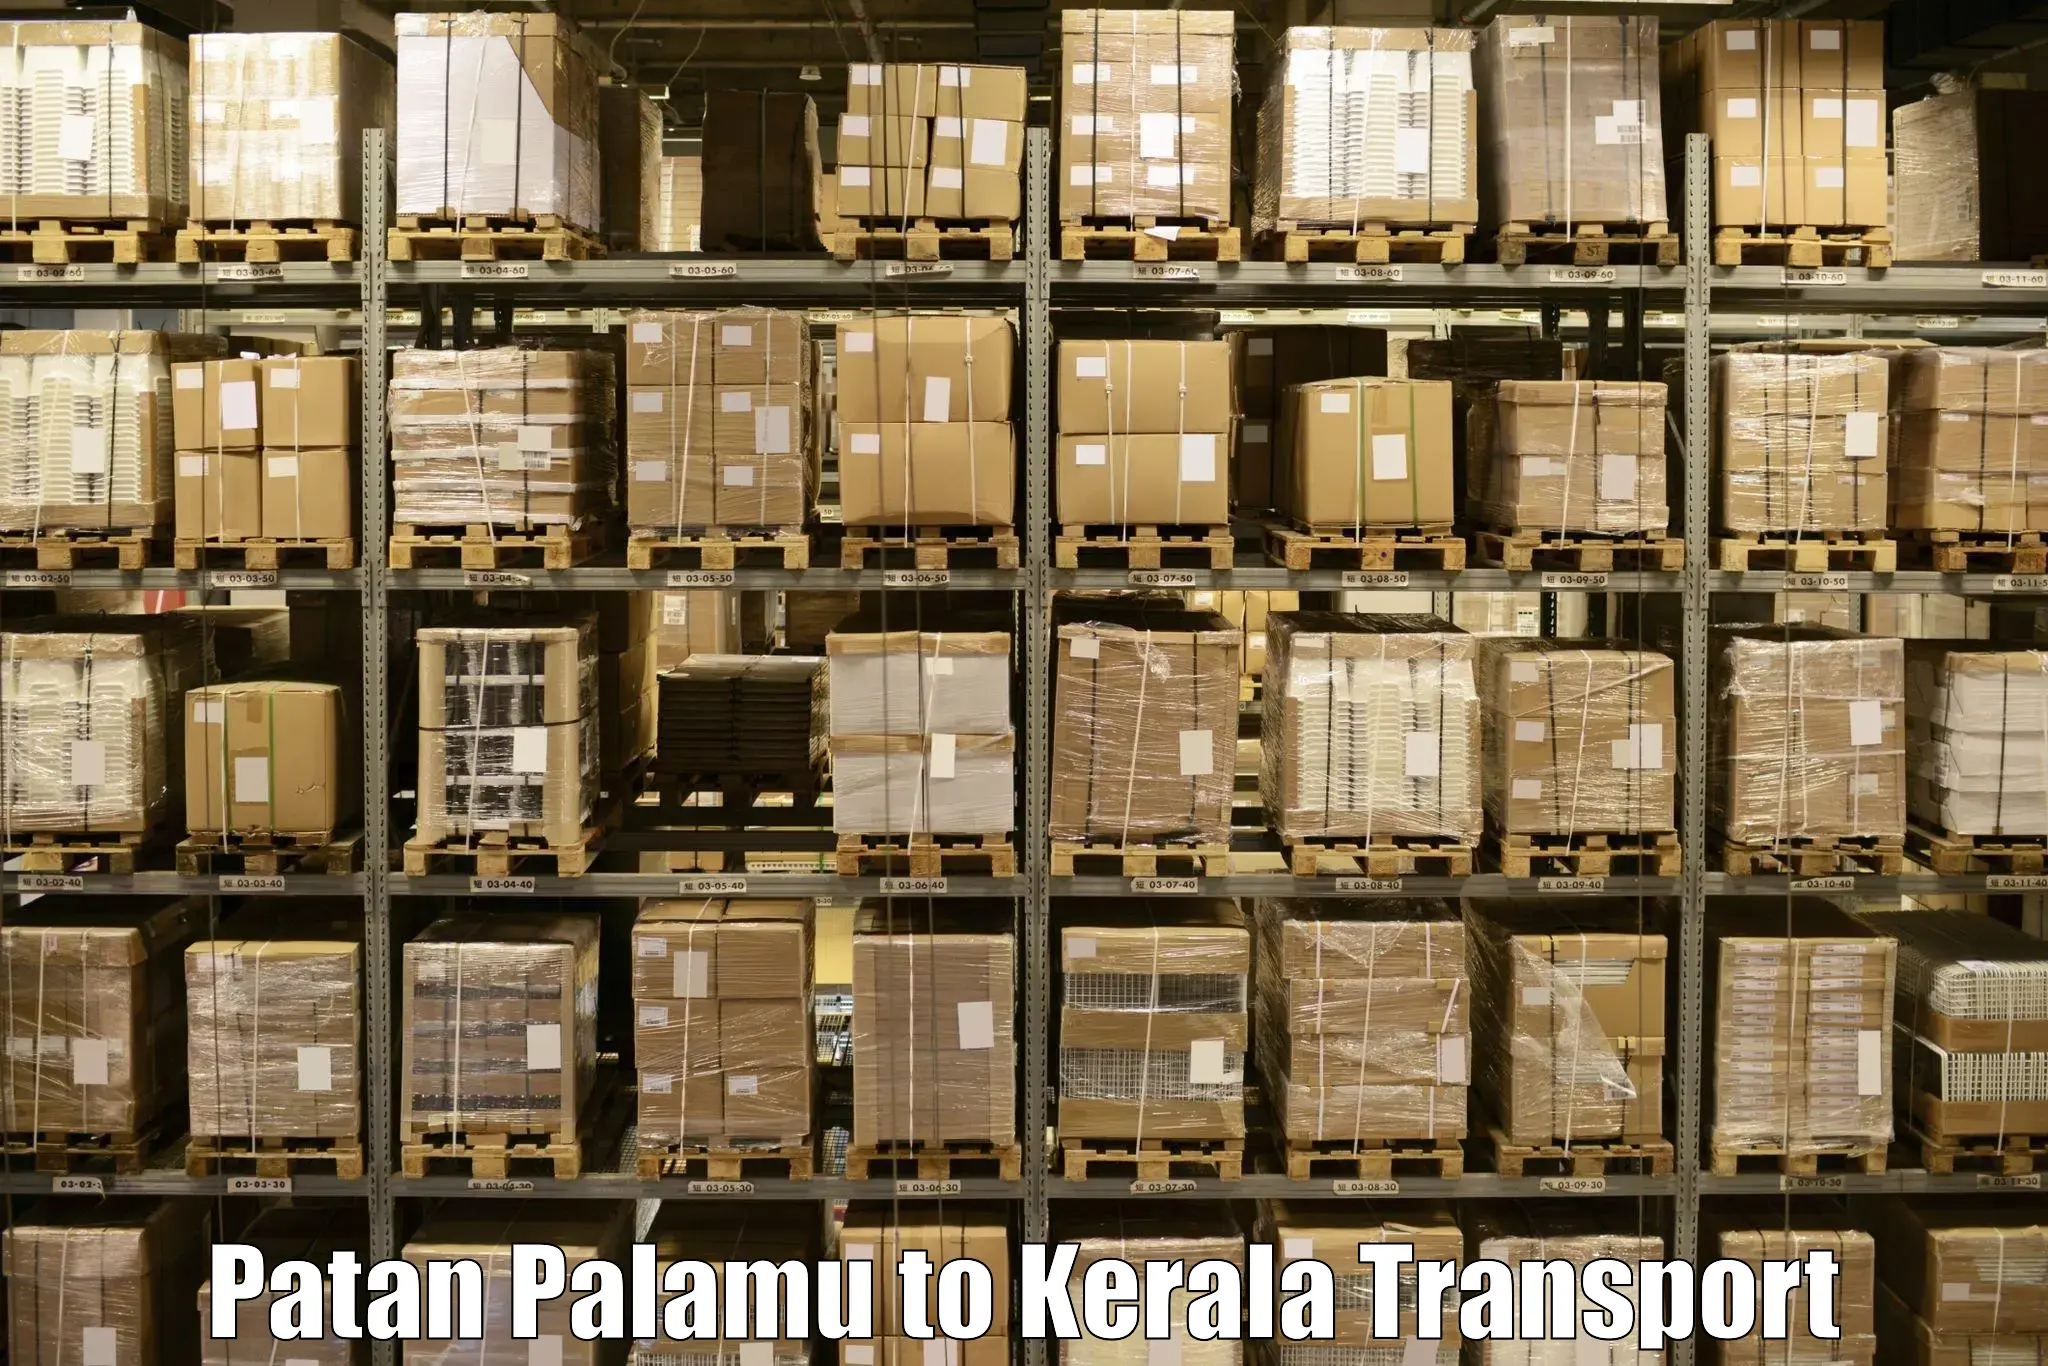 Transportation solution services Patan Palamu to Munnar